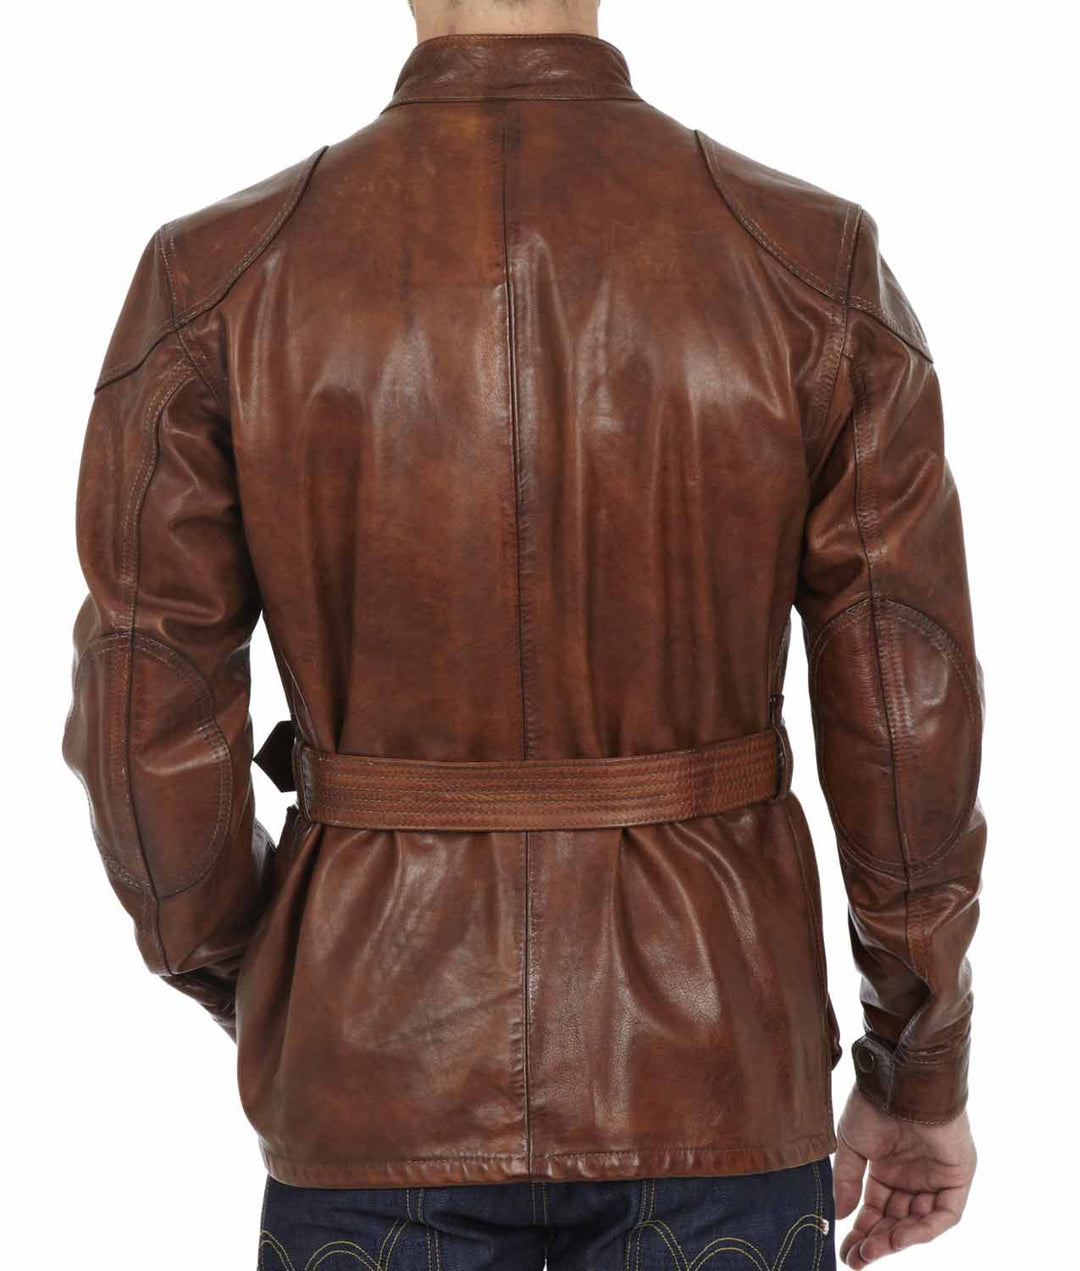 The Curious Case Of Benjamin Button Panther Jacket-Benjamin Button Brad Pitt Motorcycle Leather Jacket-Men's Leather Jacket-Brown Leather Jacket